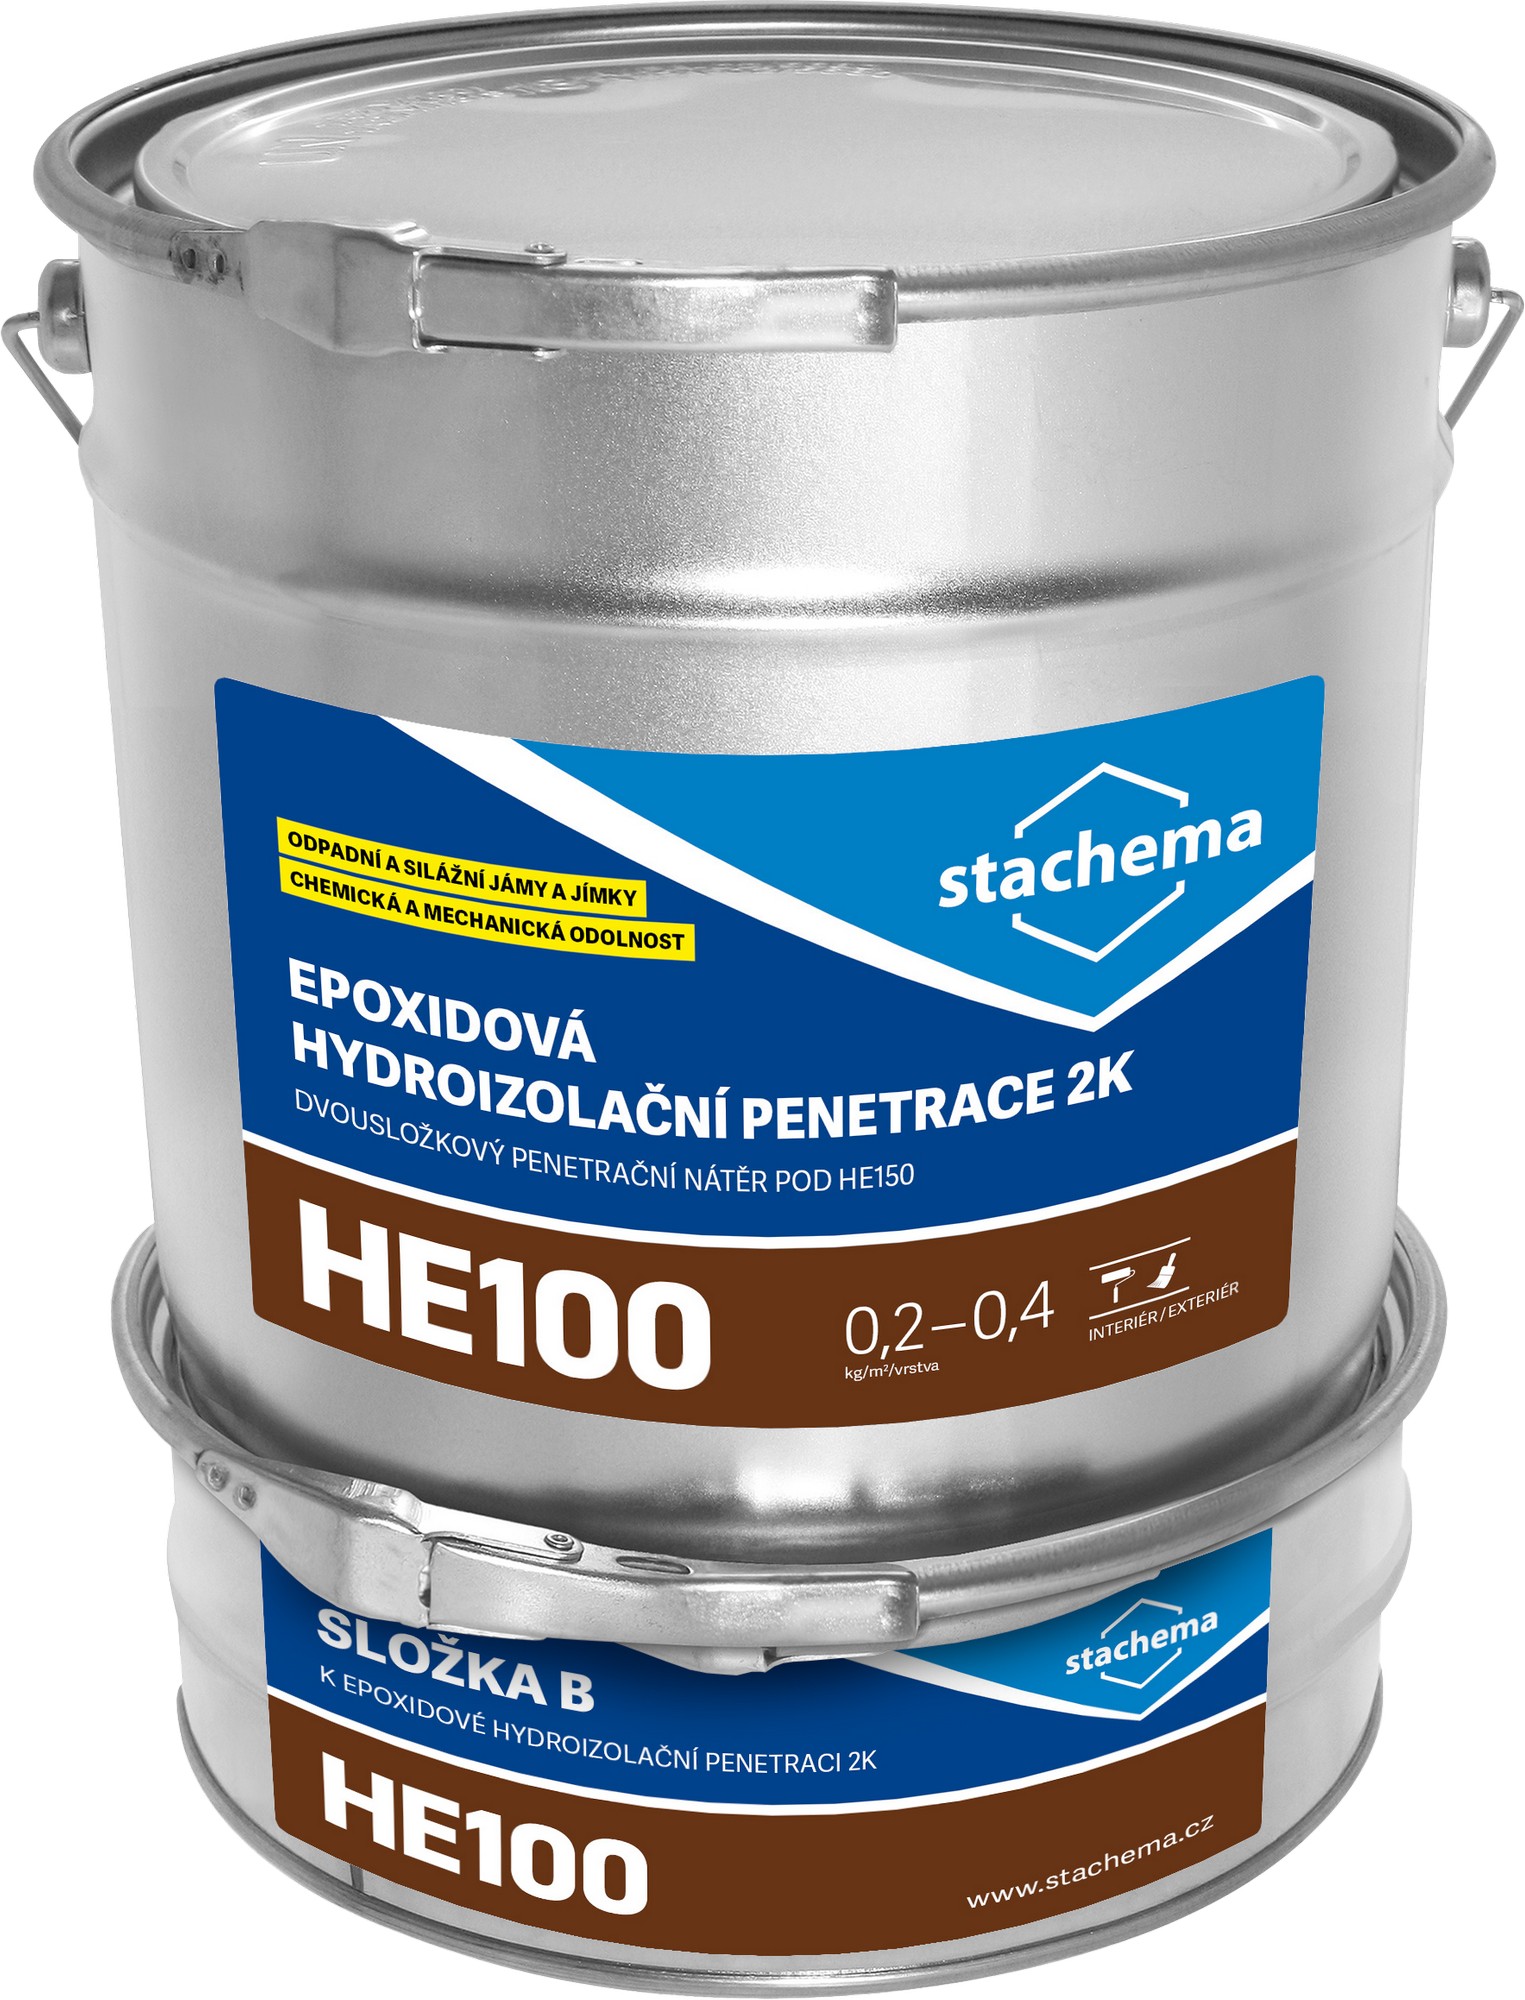 Penetrace epoxidová Stachema HE100 2k , 4,8 kg